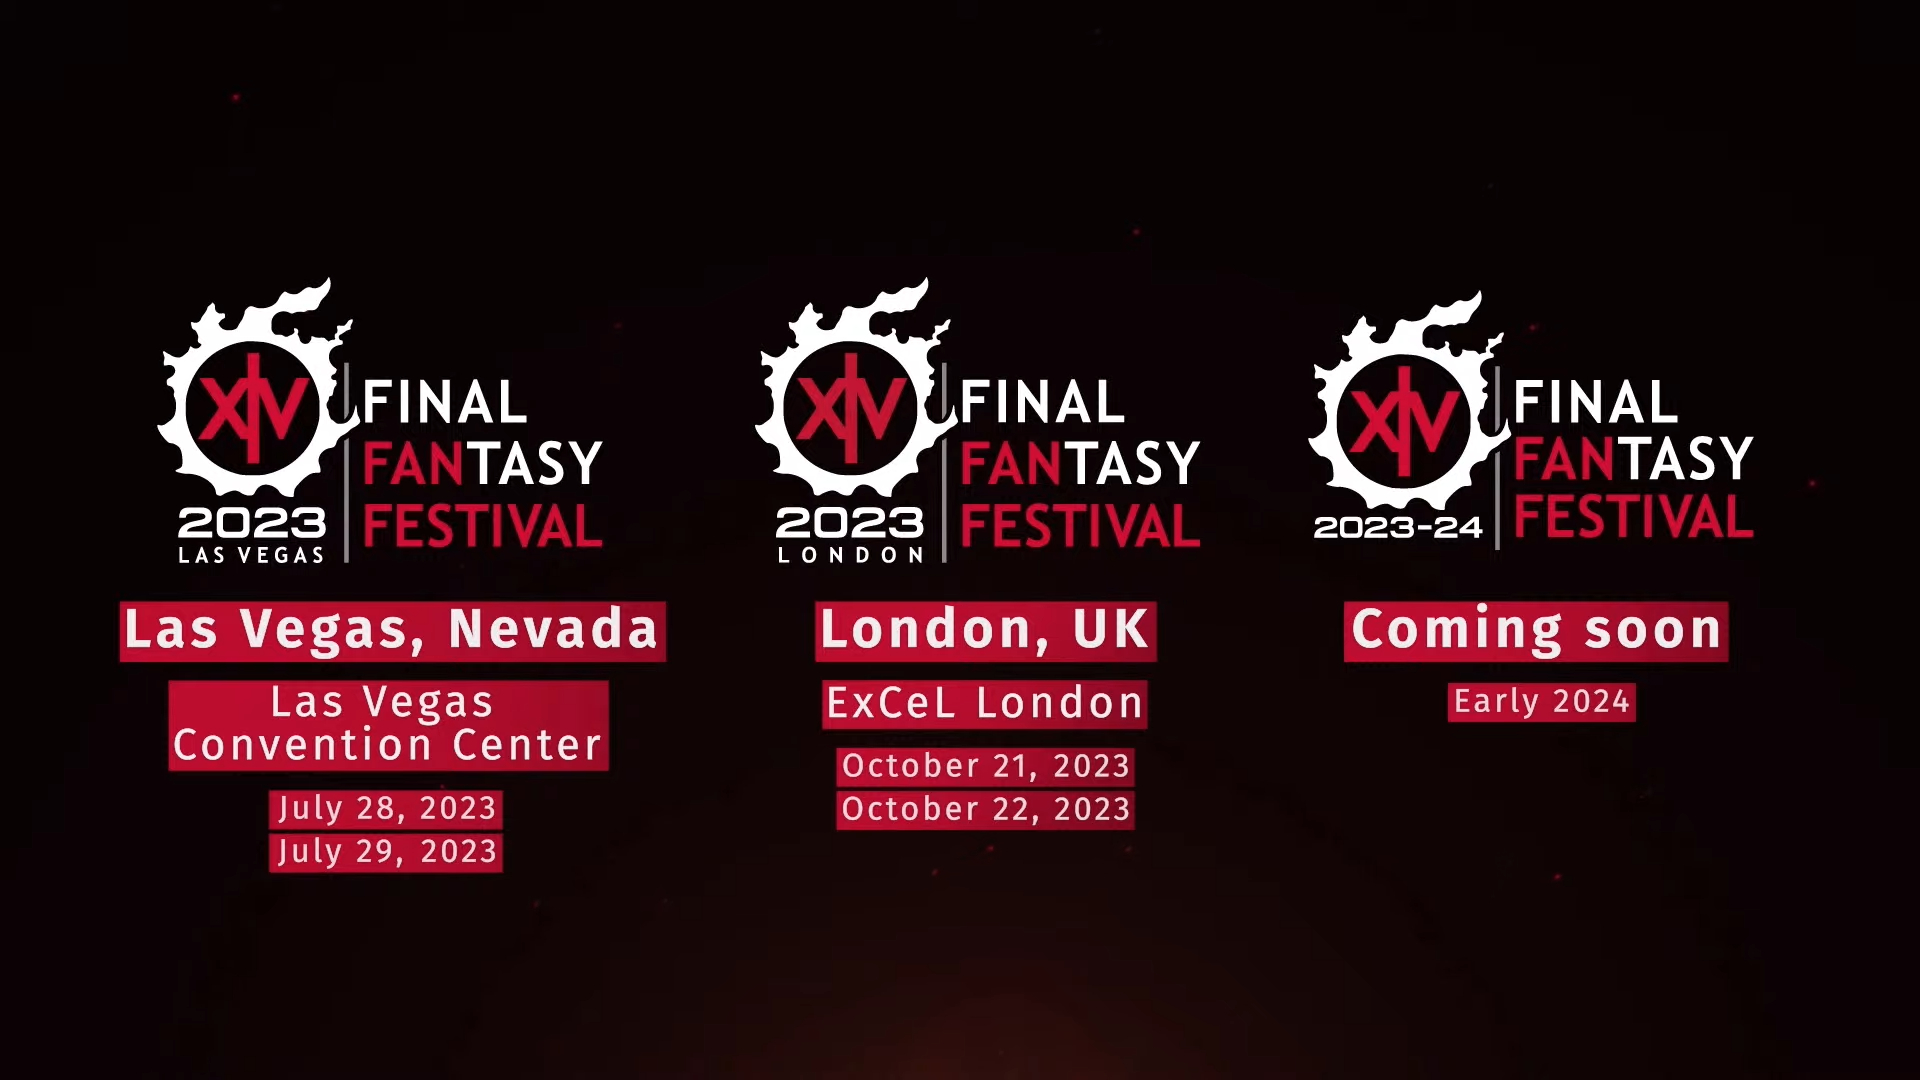 Nova Crystallis on Twitter "Final Fantasy XIV Fan Festival 20232024